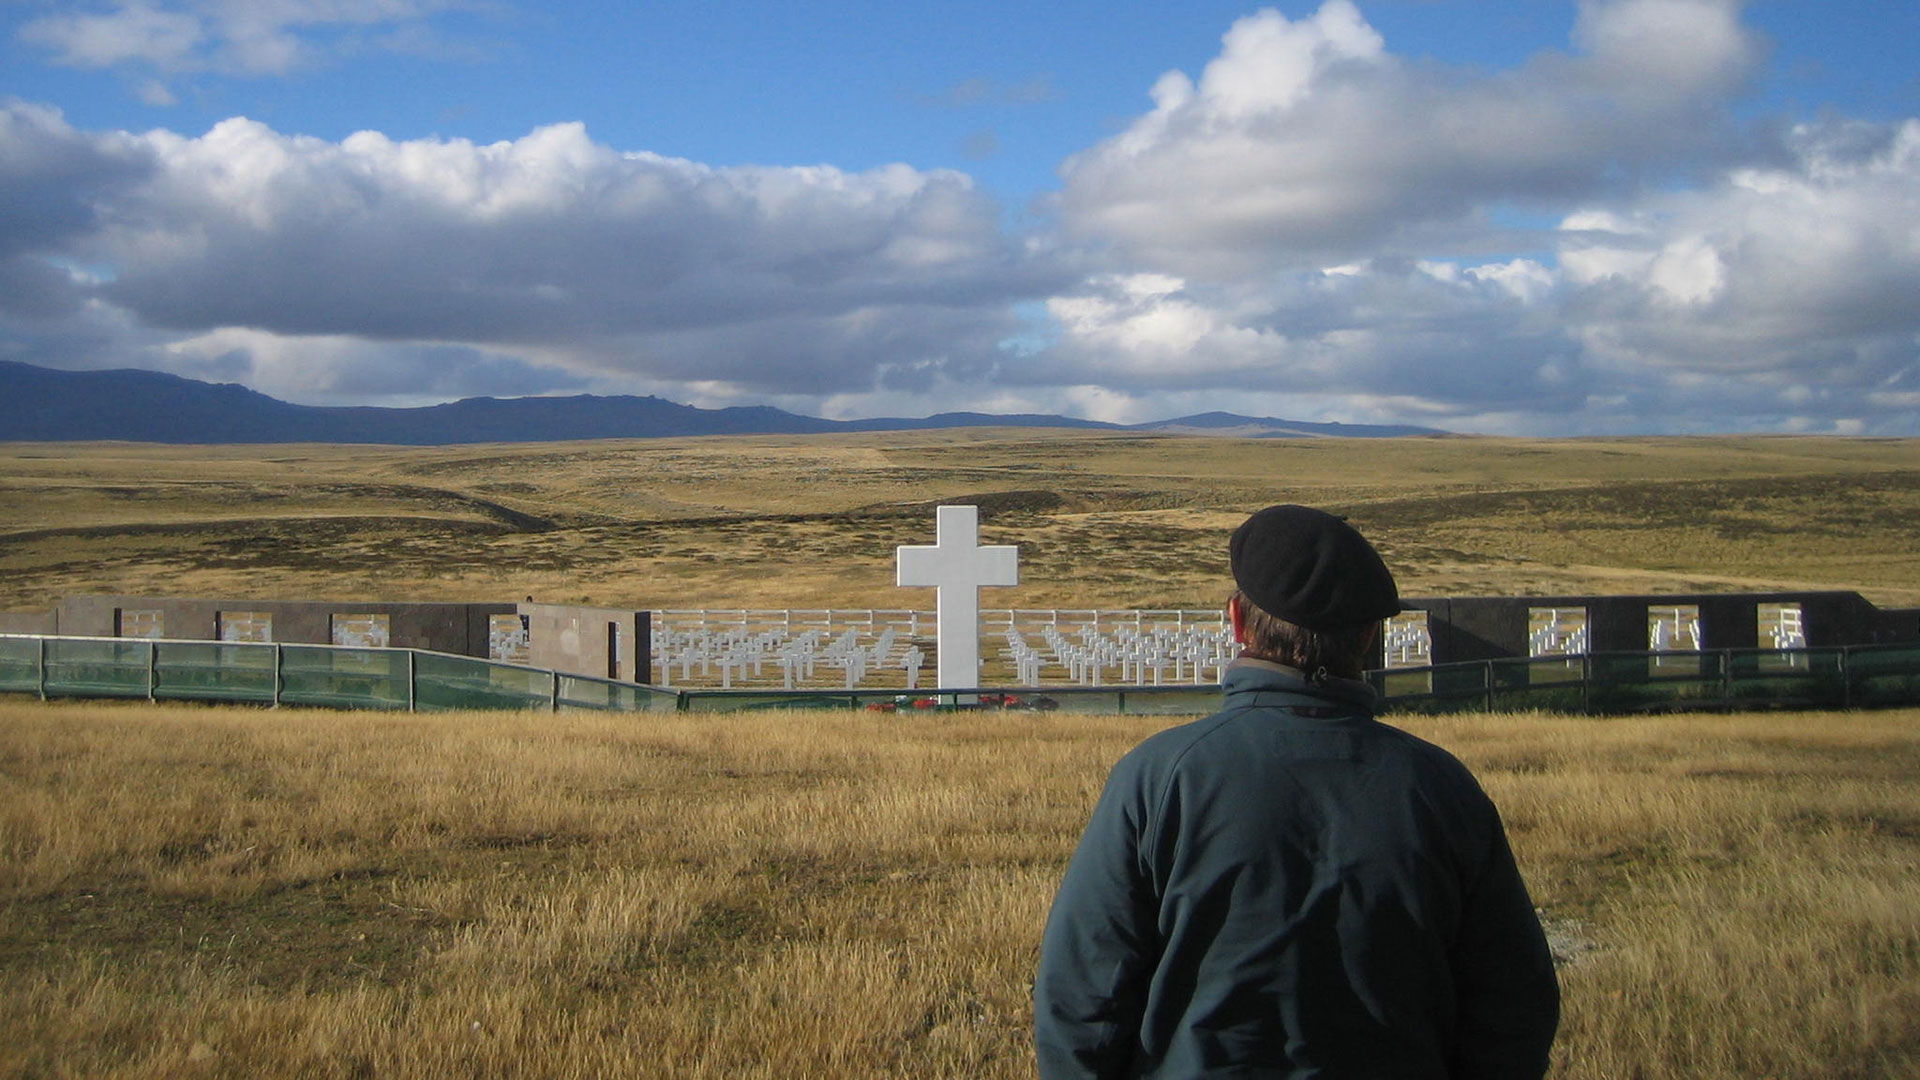 Cómo el Ejército Argentino torturó a sus propios soldados en “Malvinas: sobrevivir y honrar la vida”